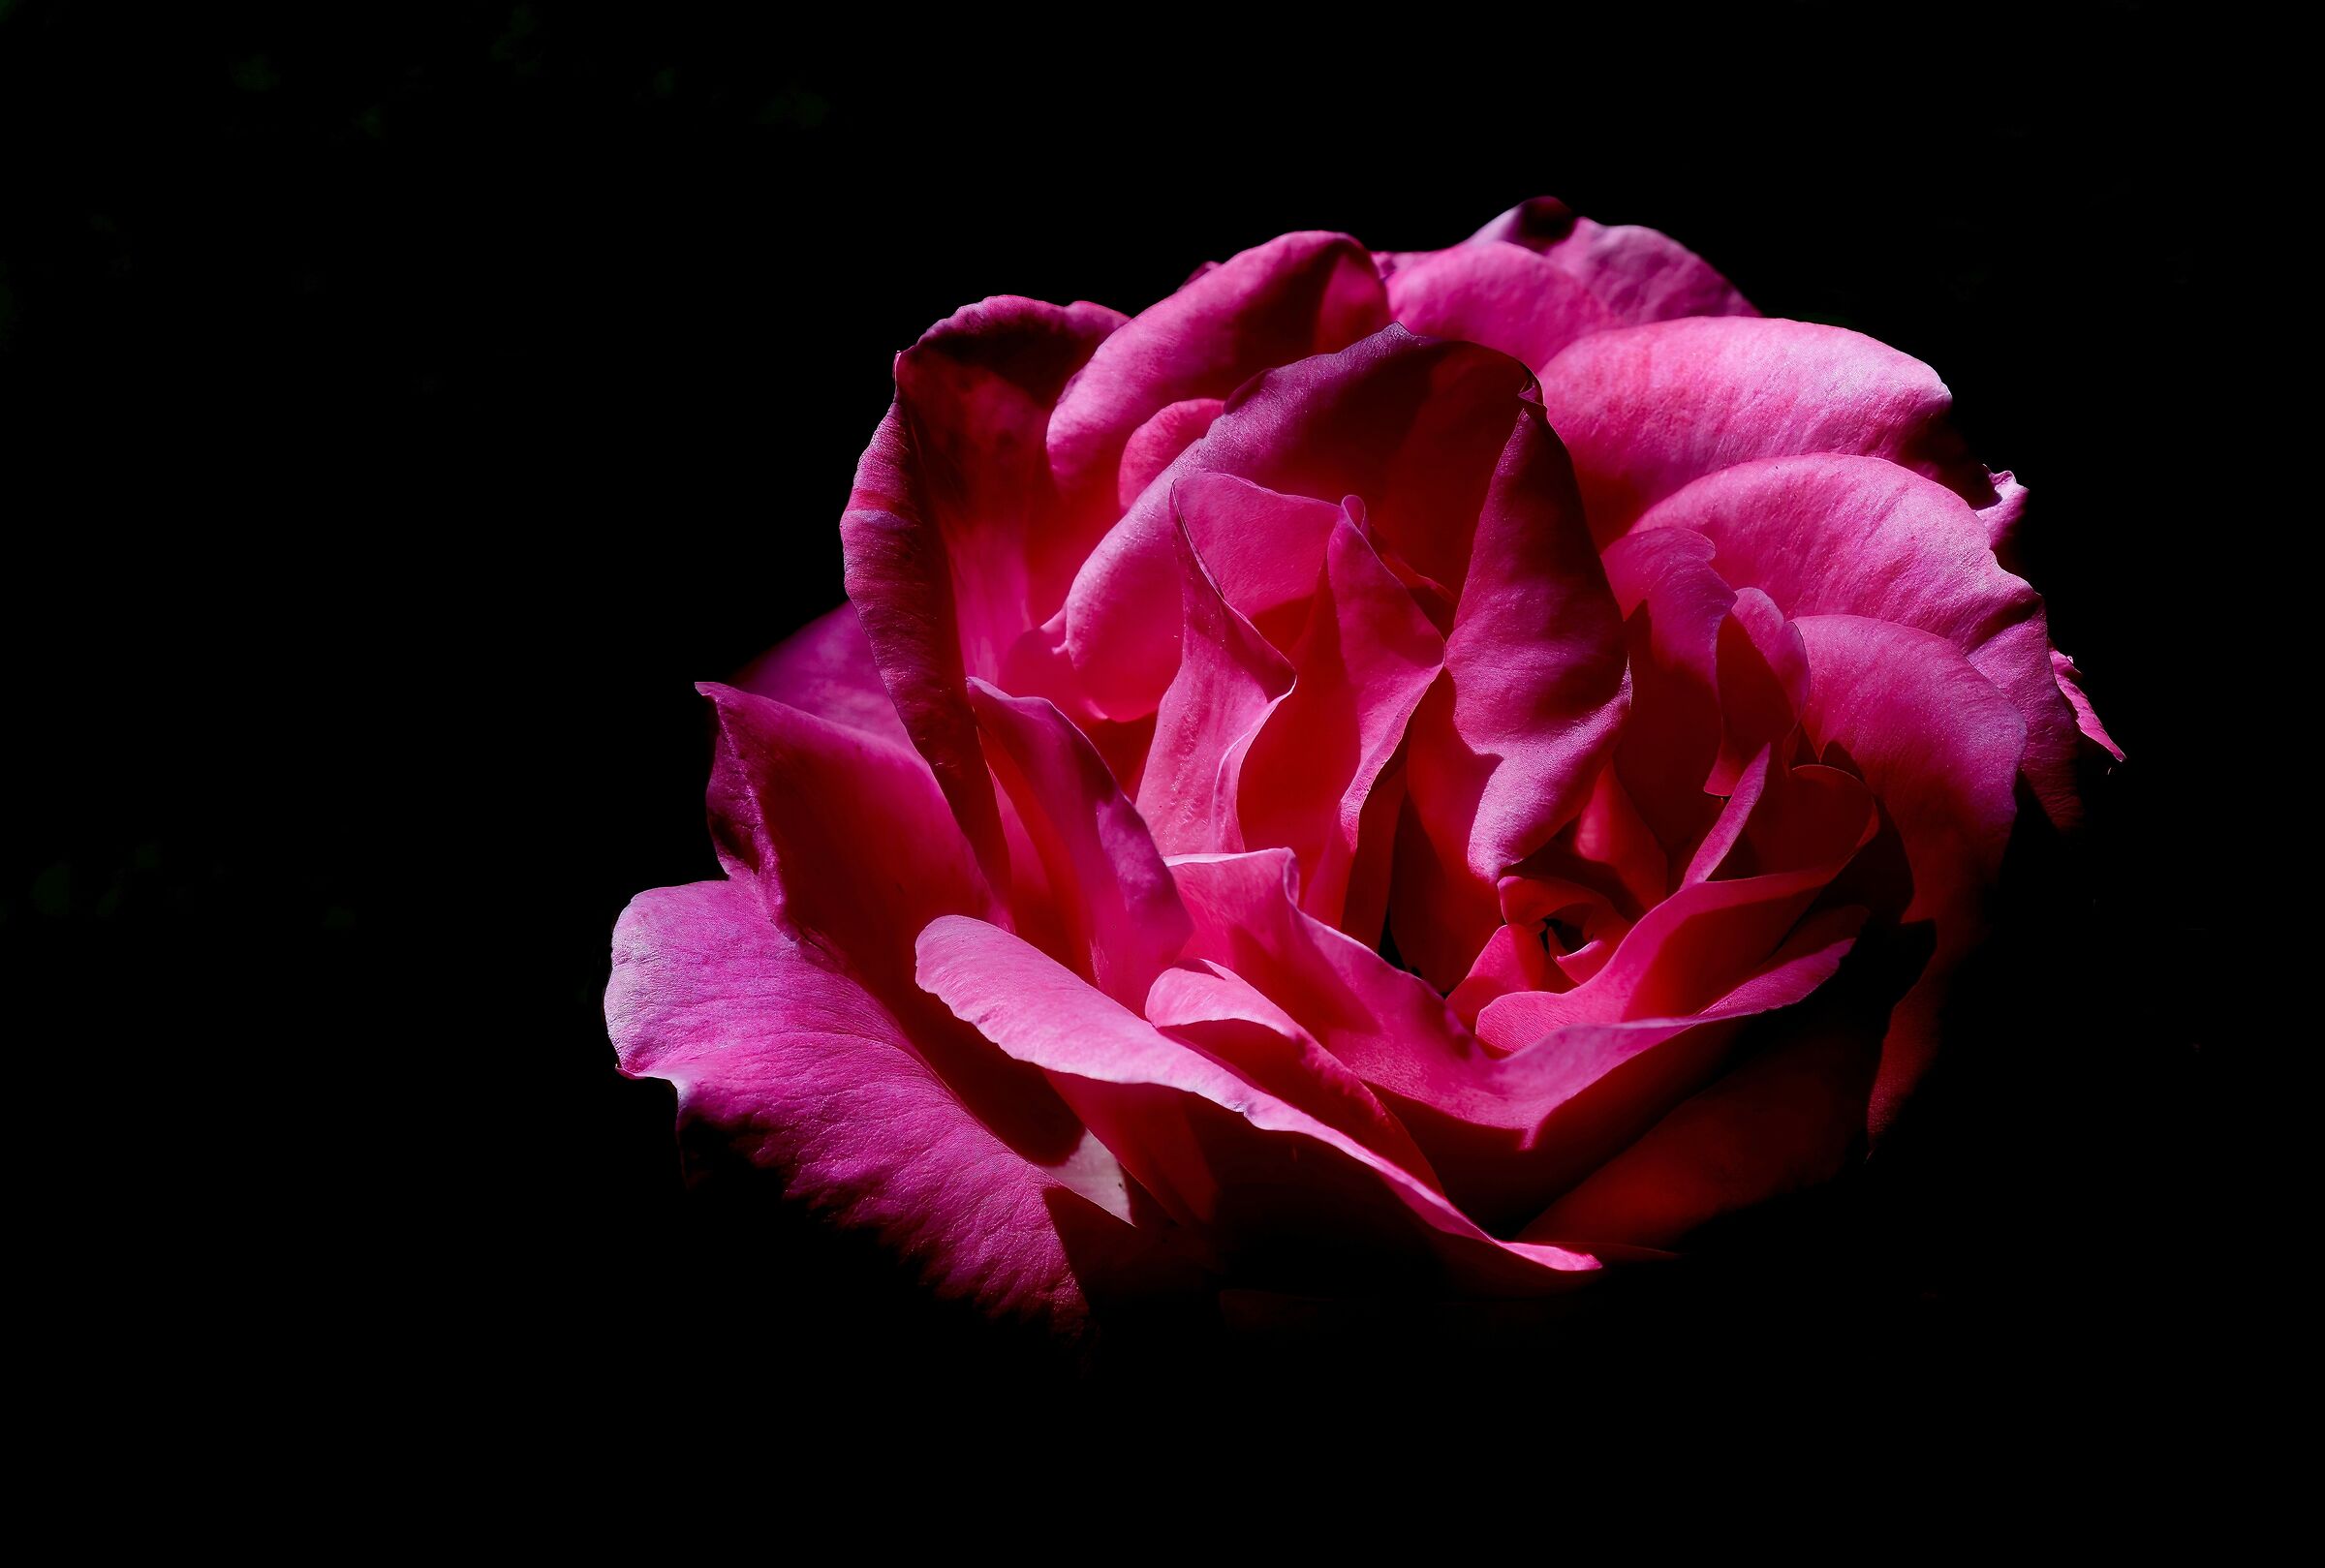 A Rose in the Dark...